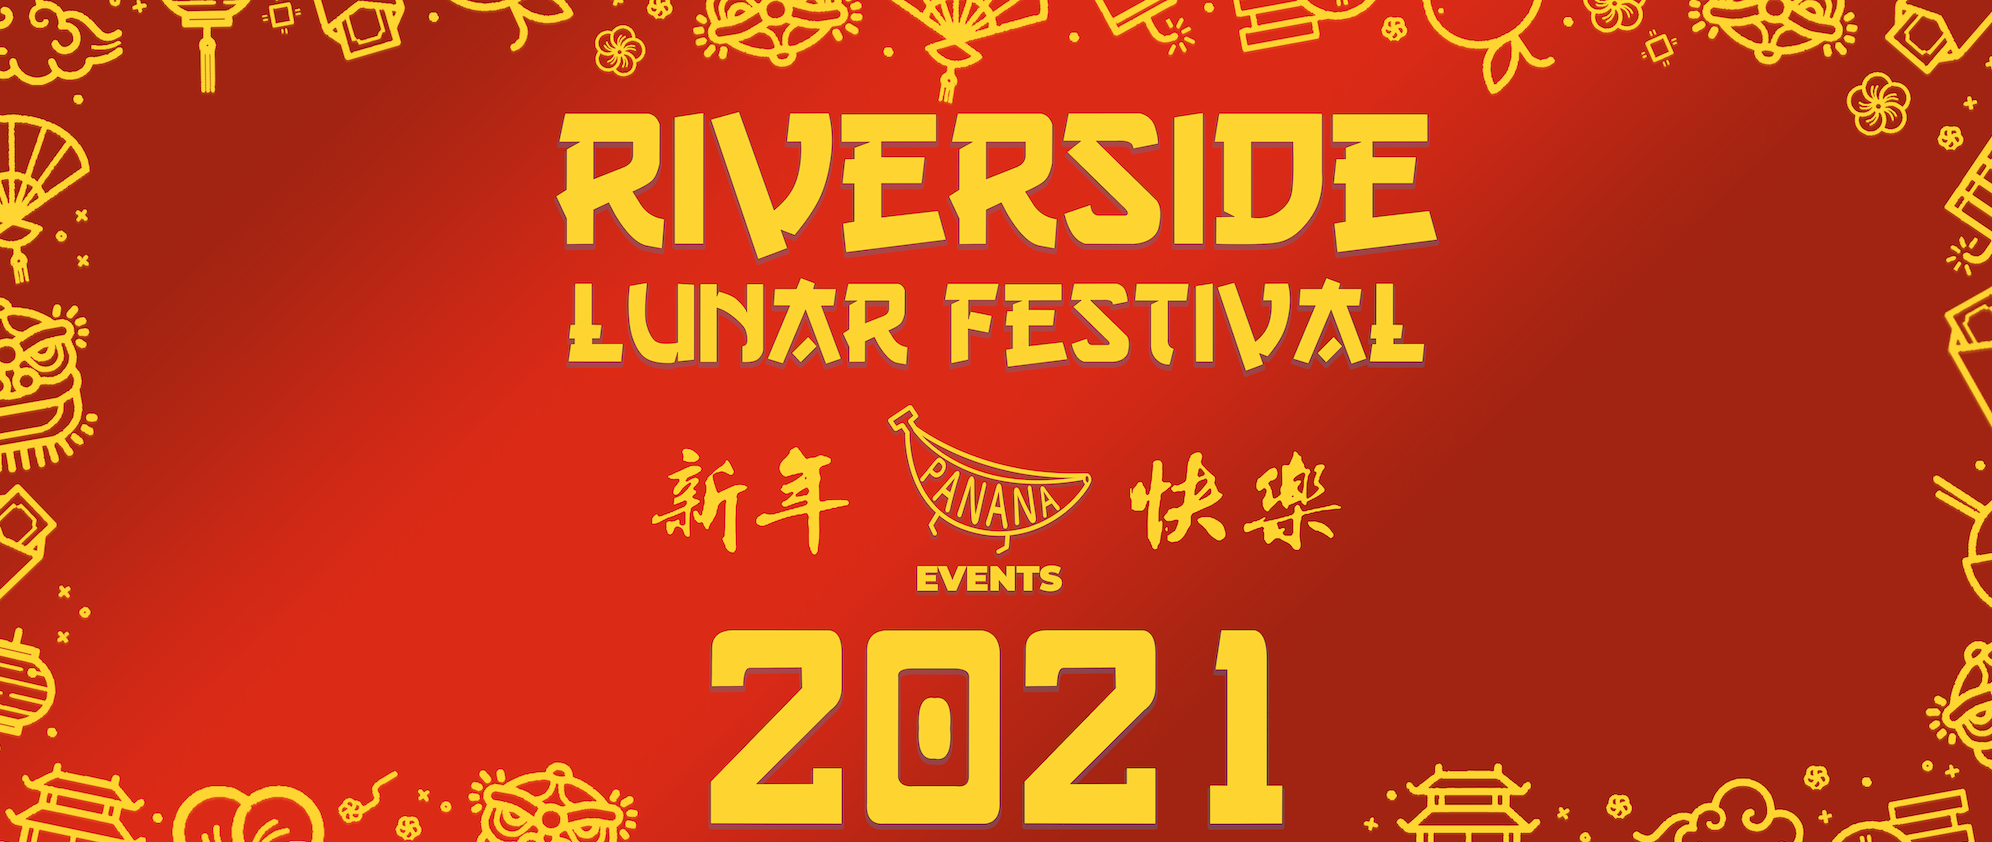 2021 Riverside Lunar Festival January 3031 30 JAN 2021